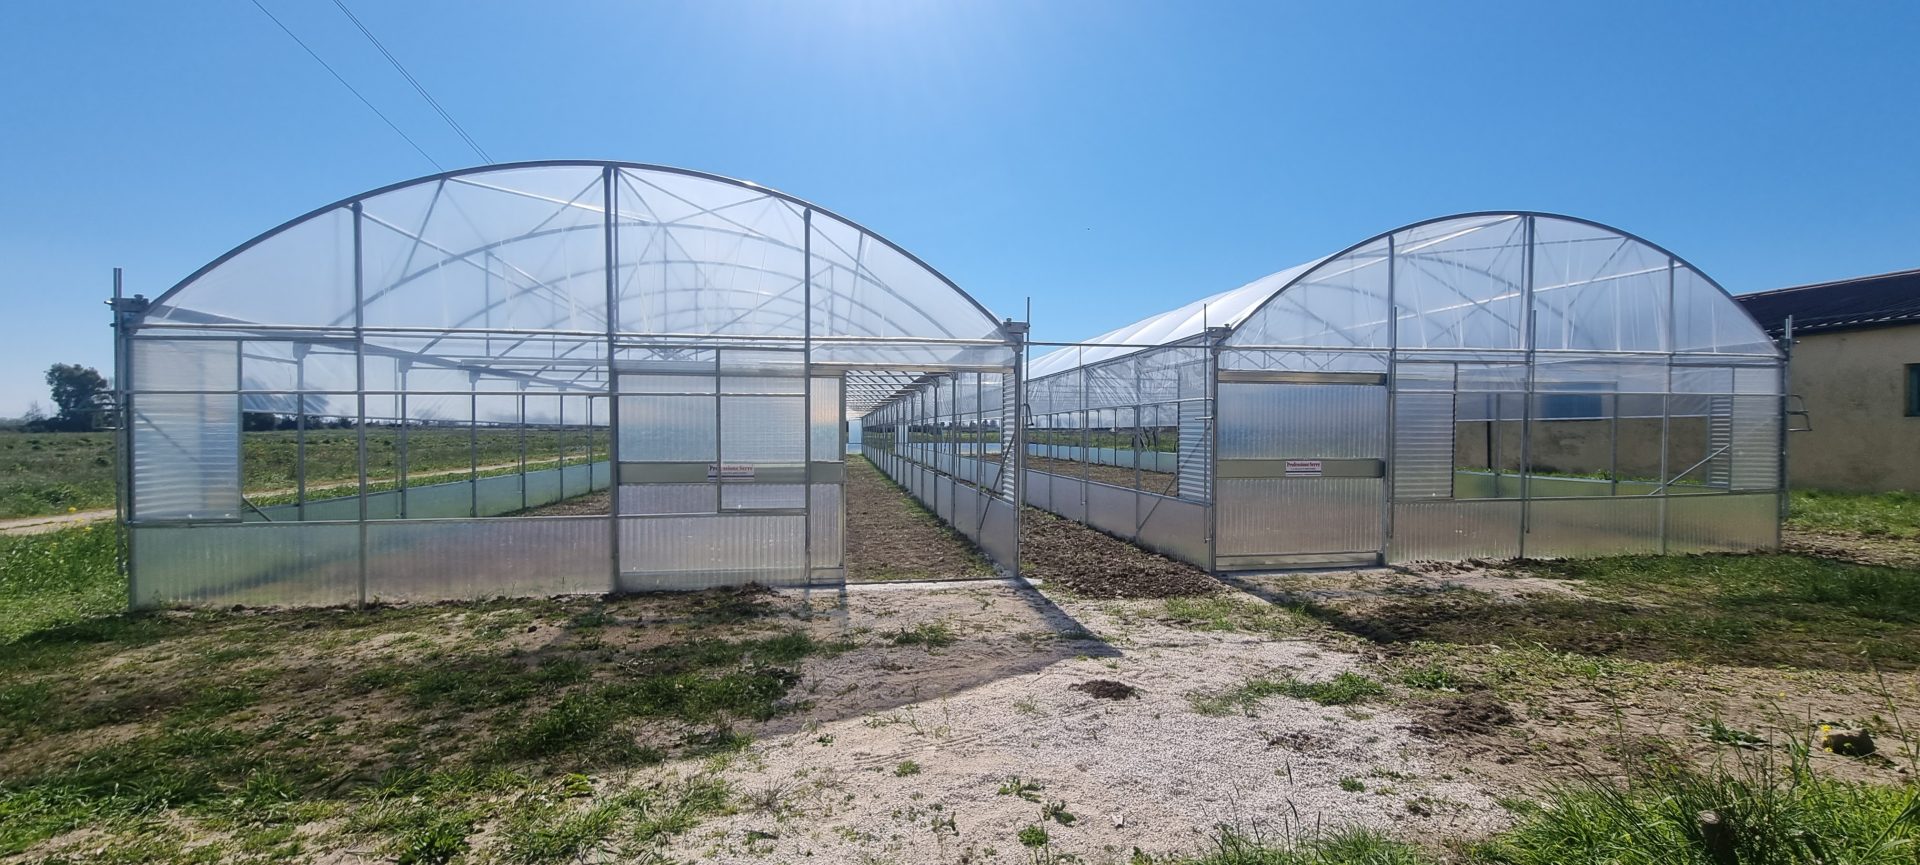 Green Farm, cresce la fattoria ecologica made in Campania